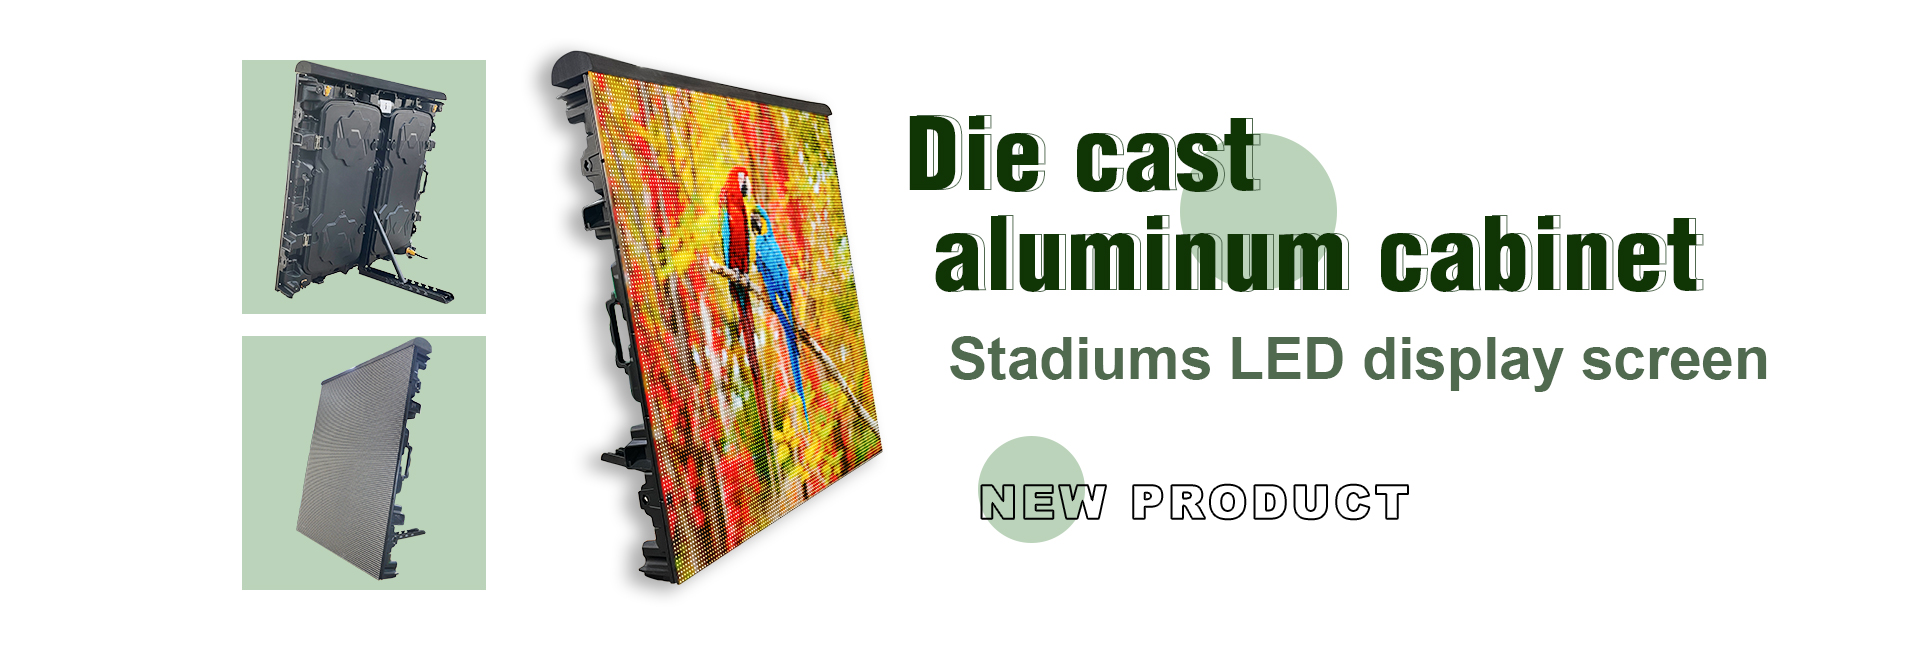 2022.10.06-banner-Die cast aluminum cabinet